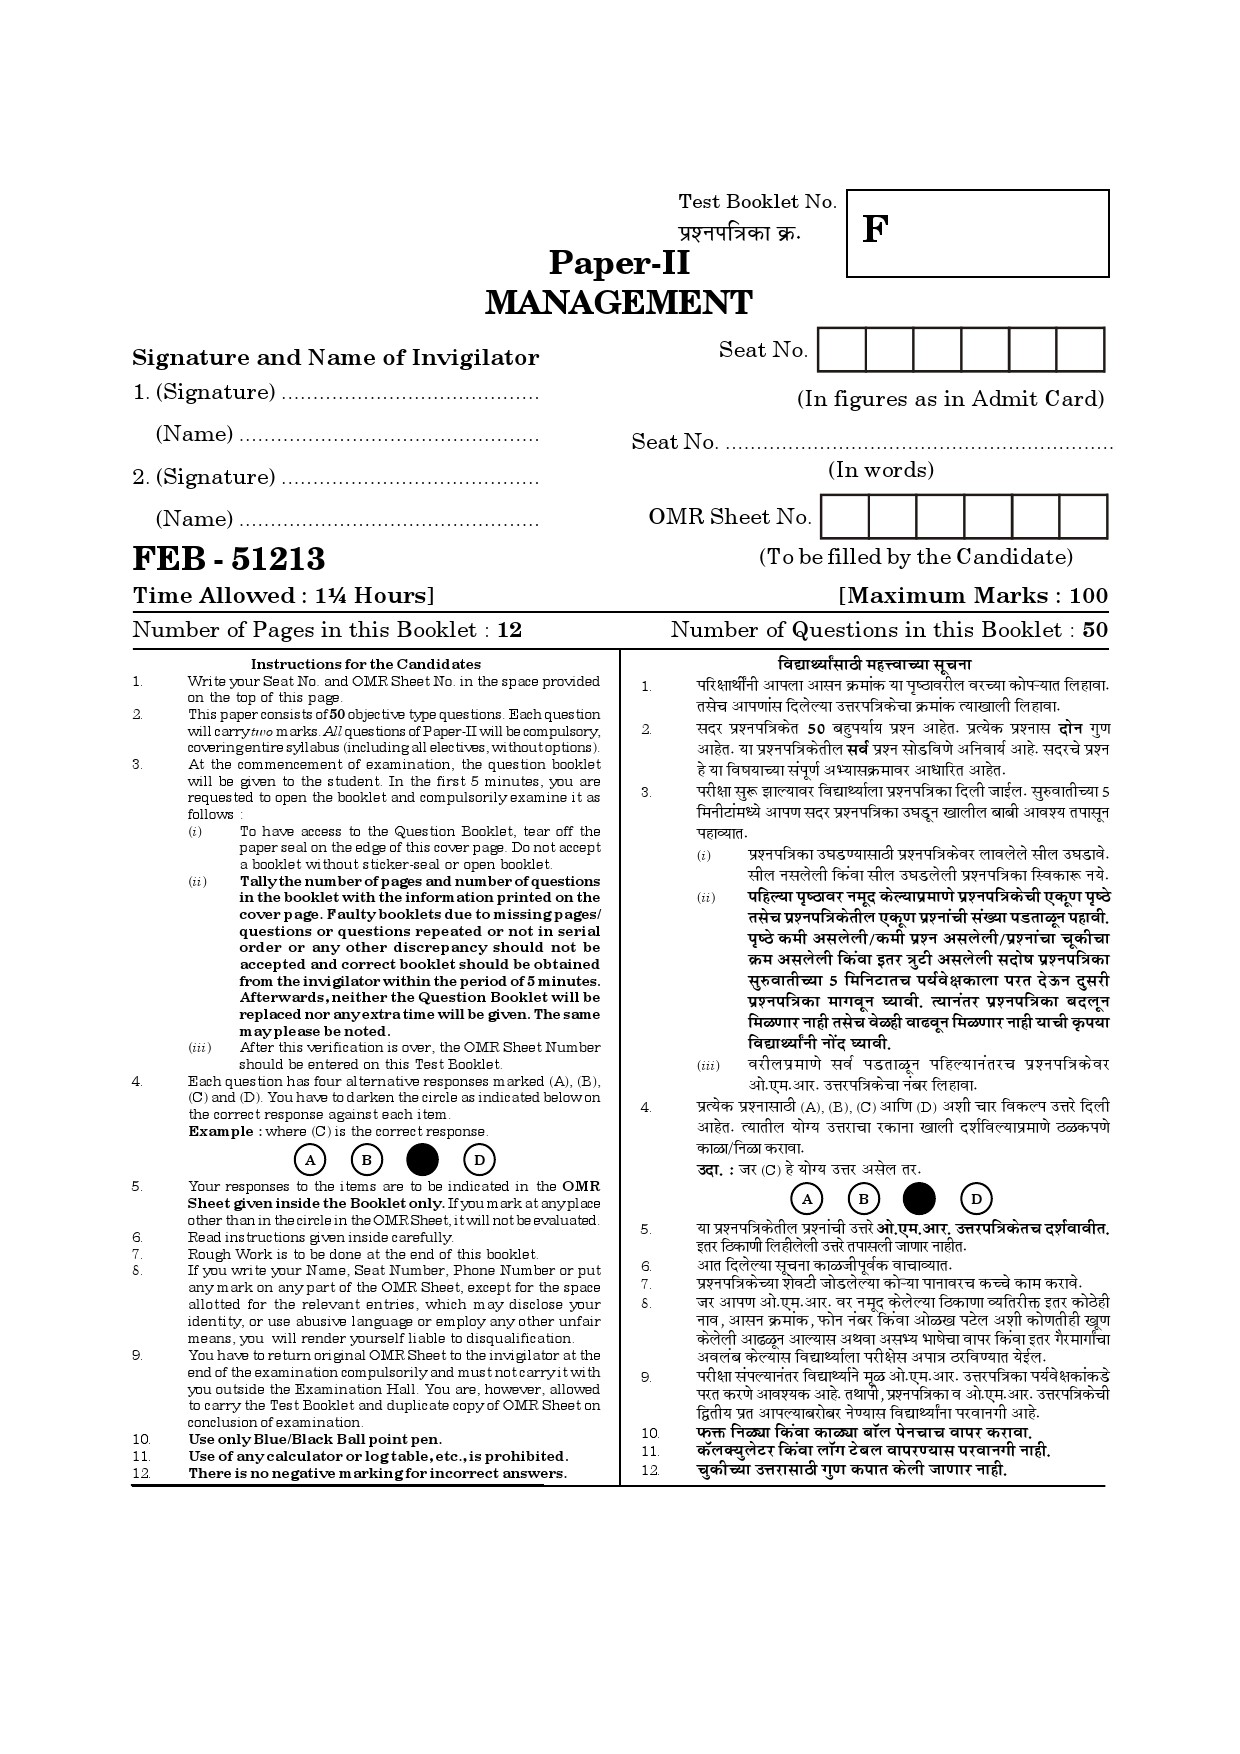 Maharashtra SET Management Question Paper II February 2013 10